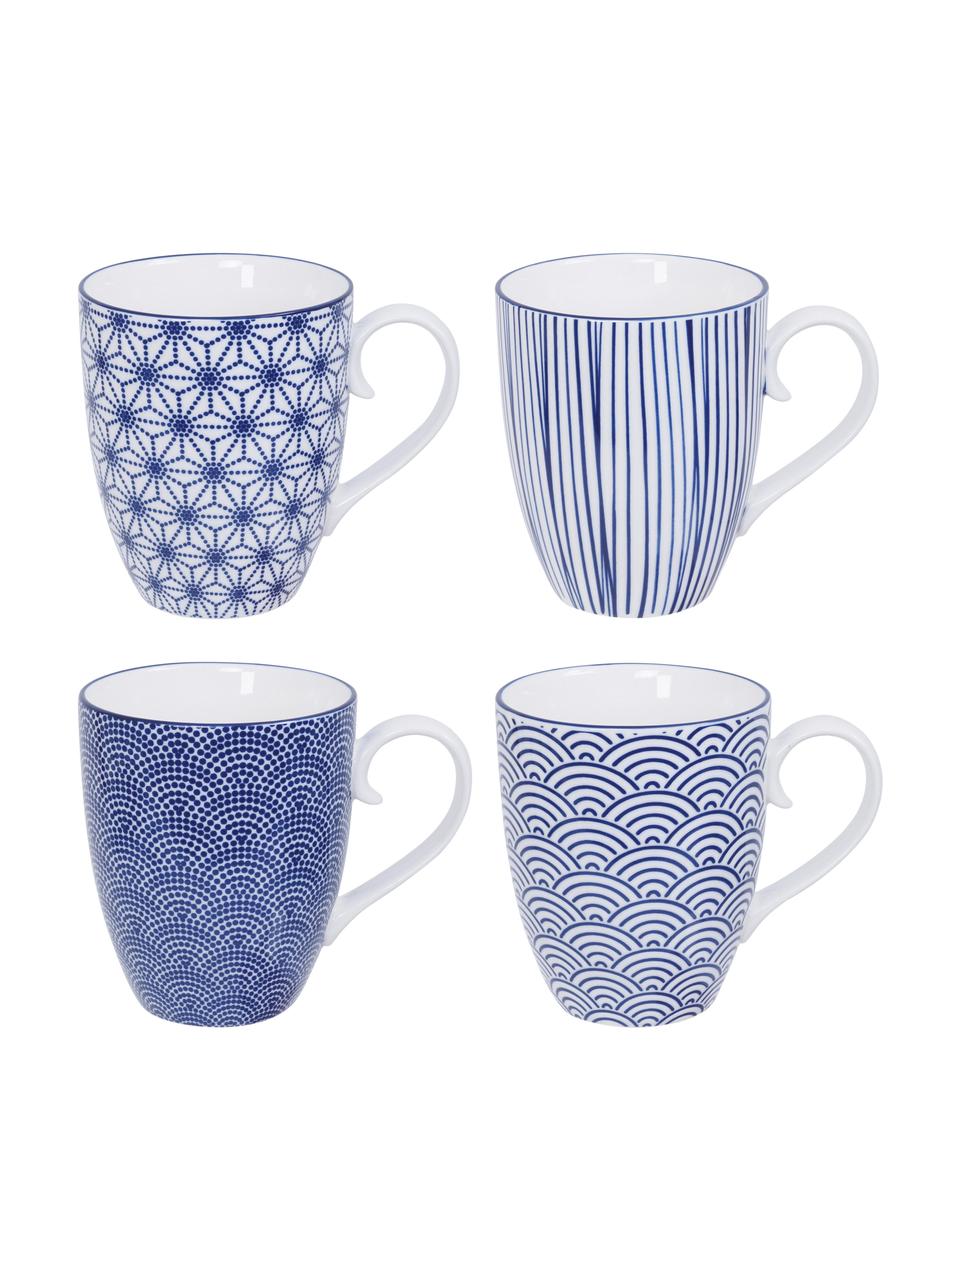 Handgemachte Porzellan-Tassen Nippon, 4-er Set, Porzellan, Blau, Weiß, Ø 9 x H 10 cm, 380 ml